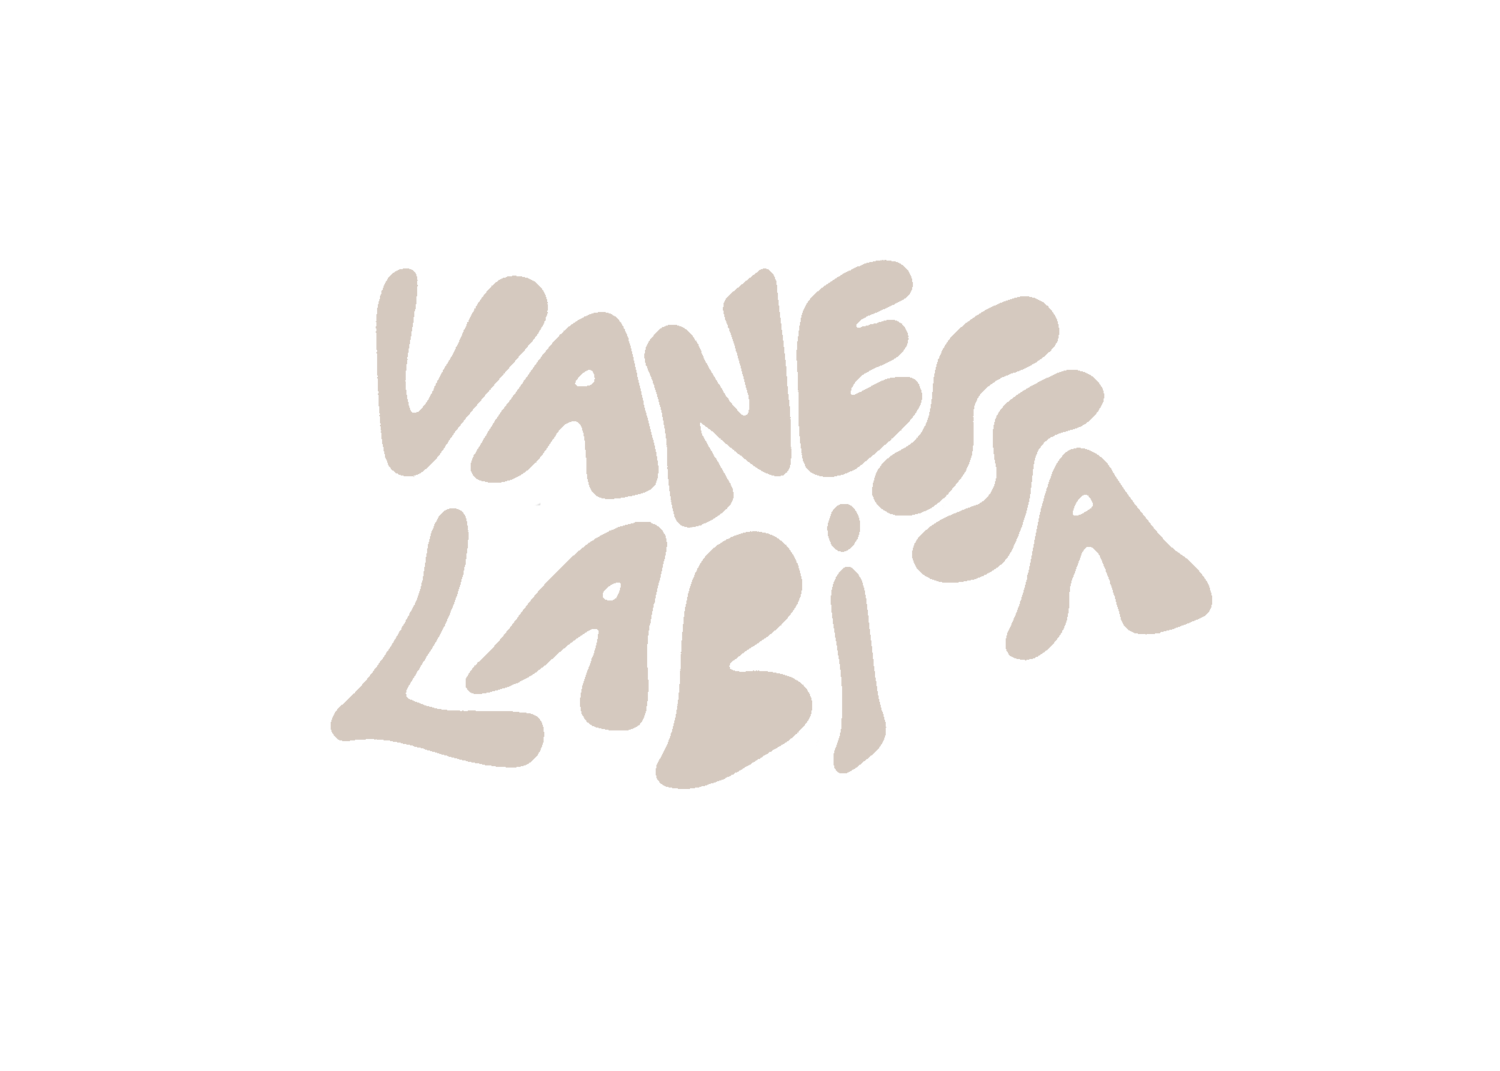 Vanessa-Labi.com